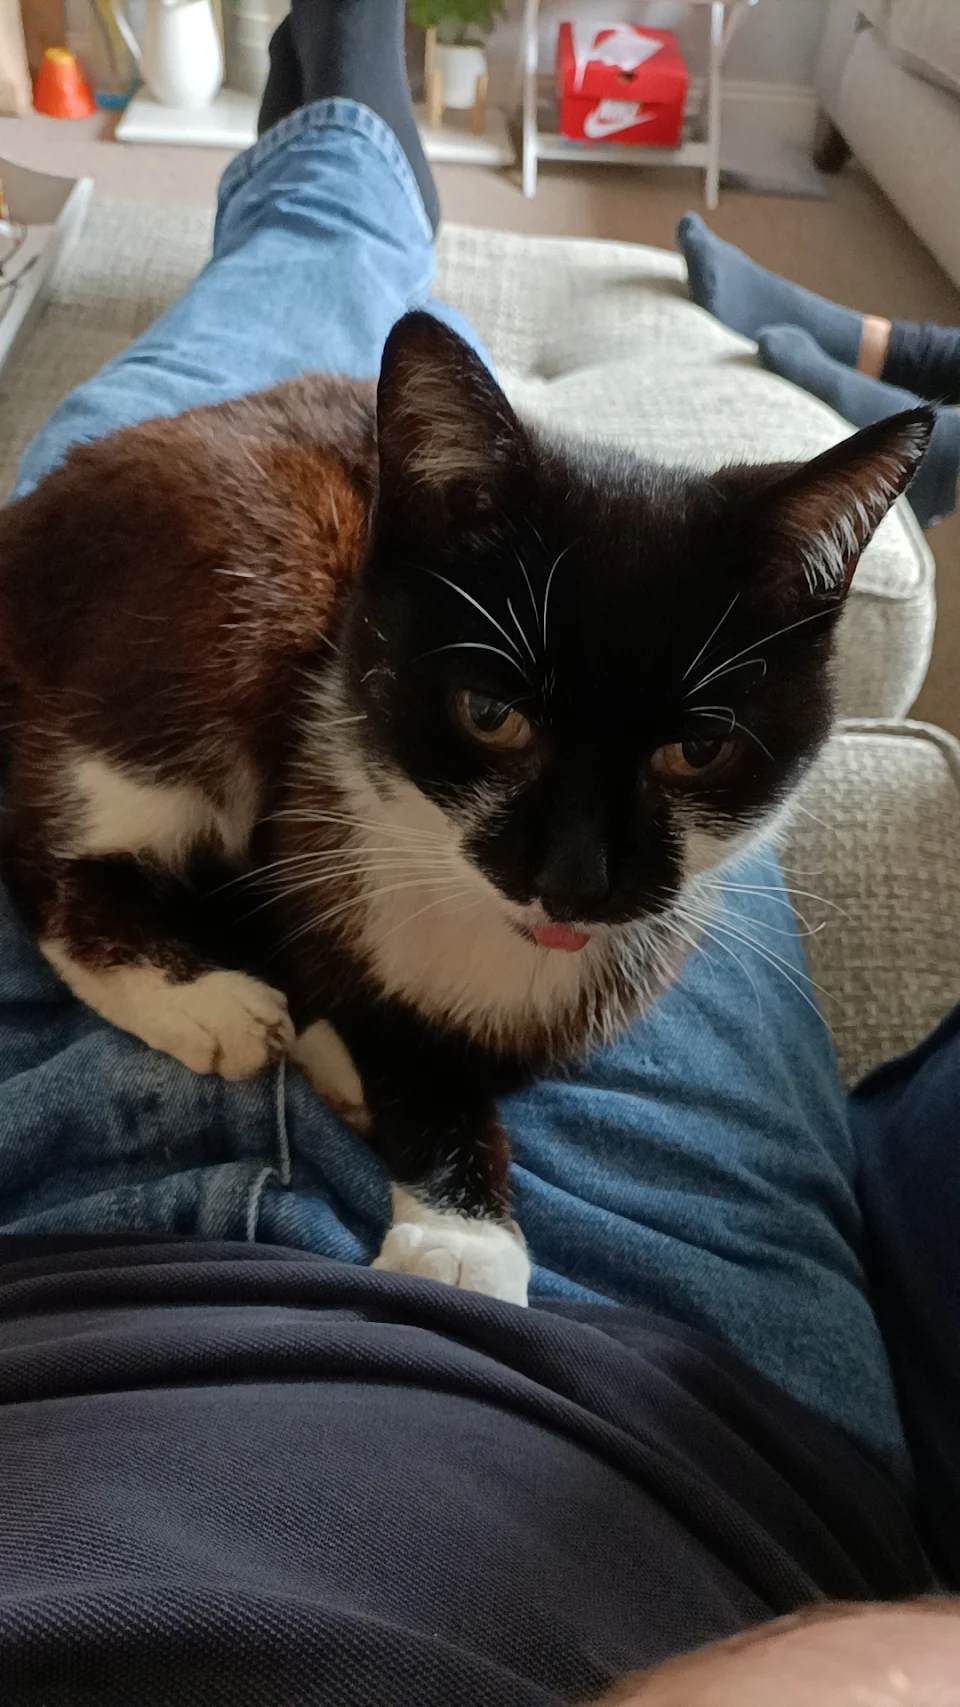 I need to go to work but Lola (15F) has sat on me, do I need to quit my job ?